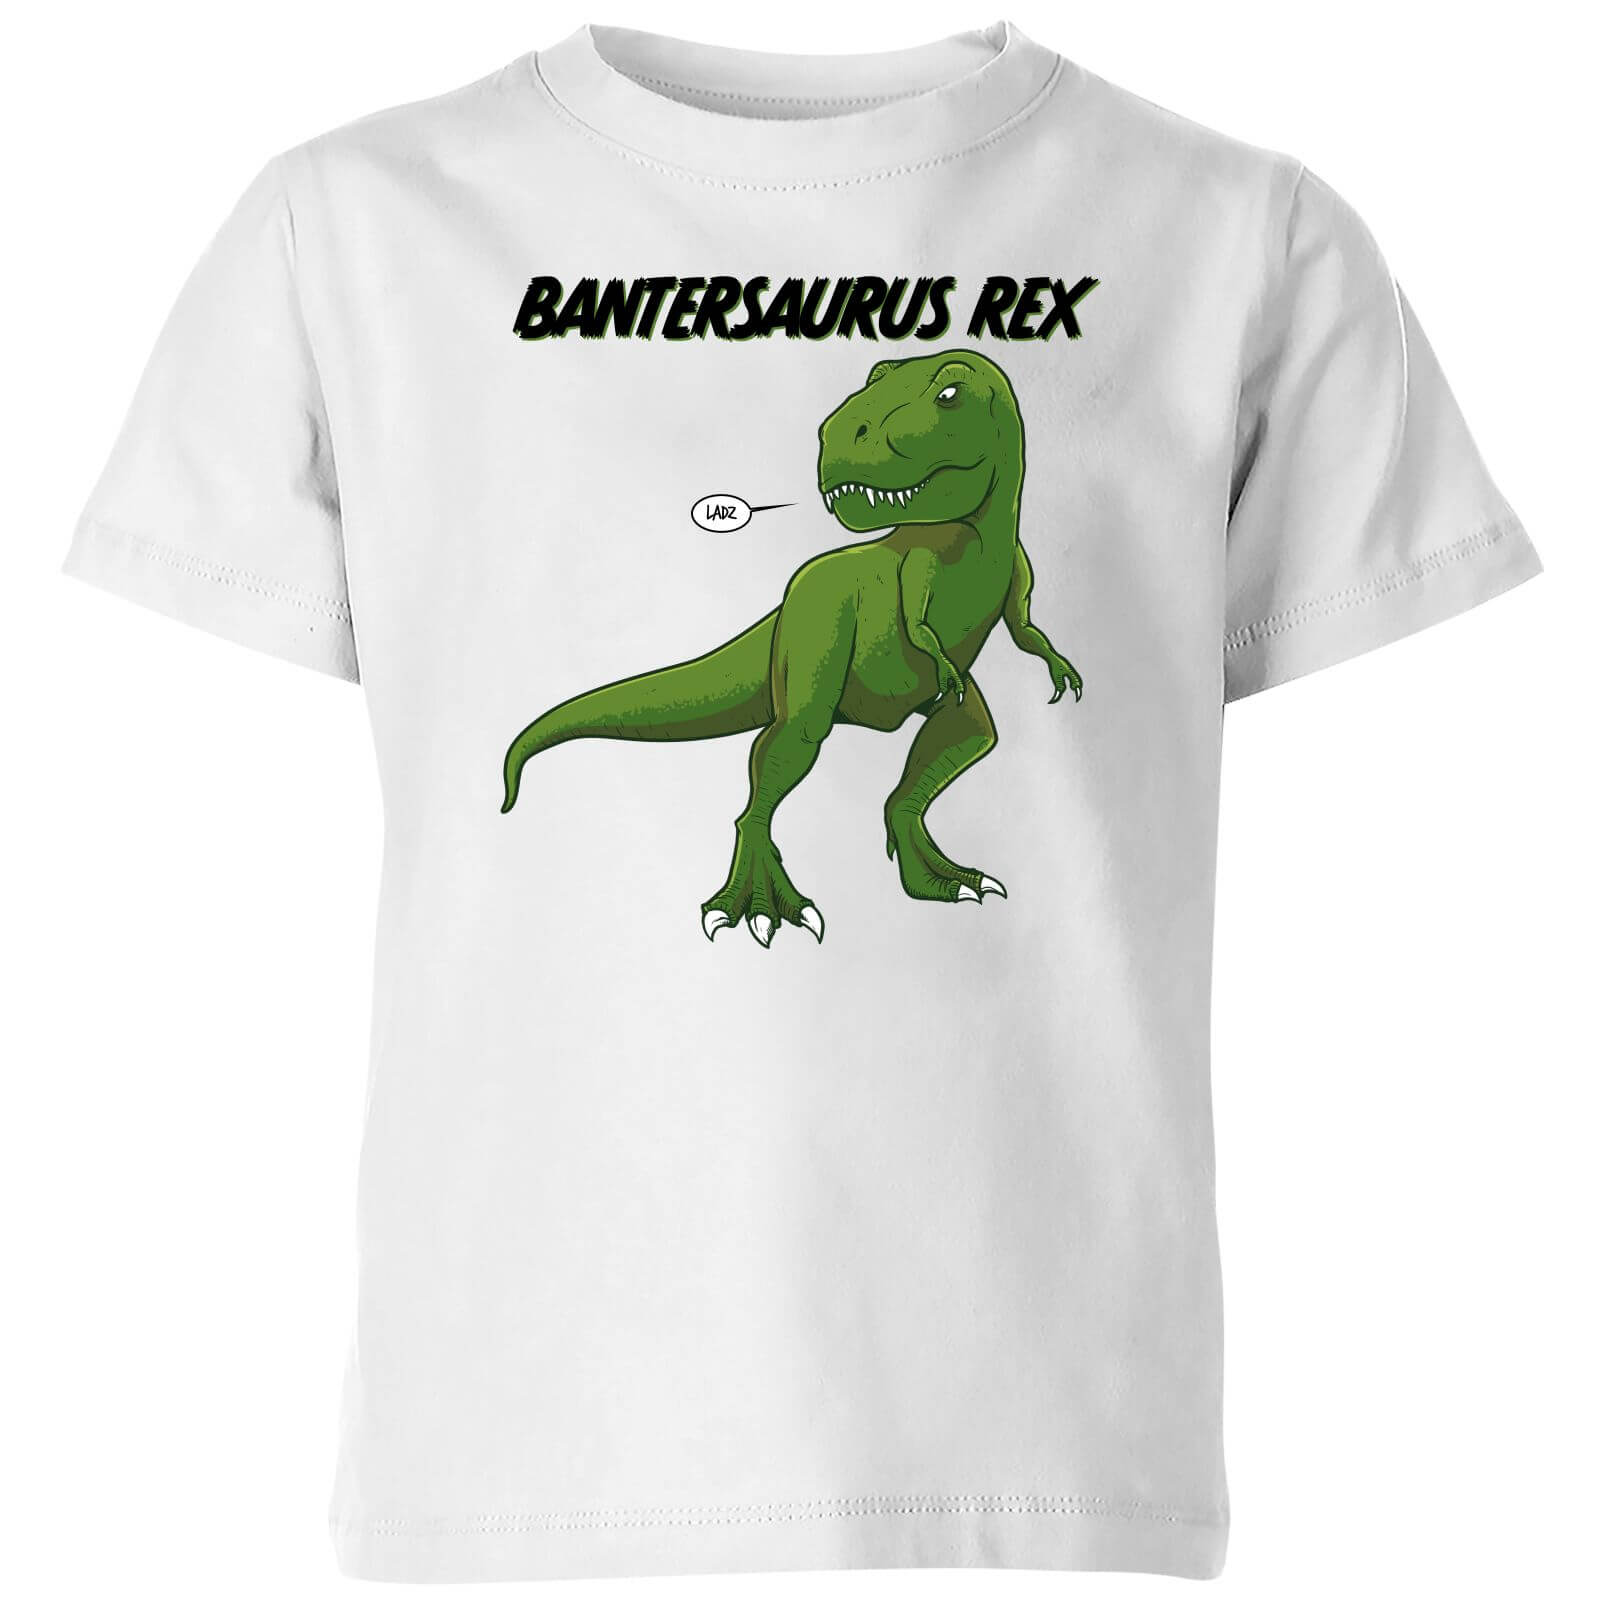 Bantersaurus Rex Kids' T-Shirt - White - 3-4 Years - White